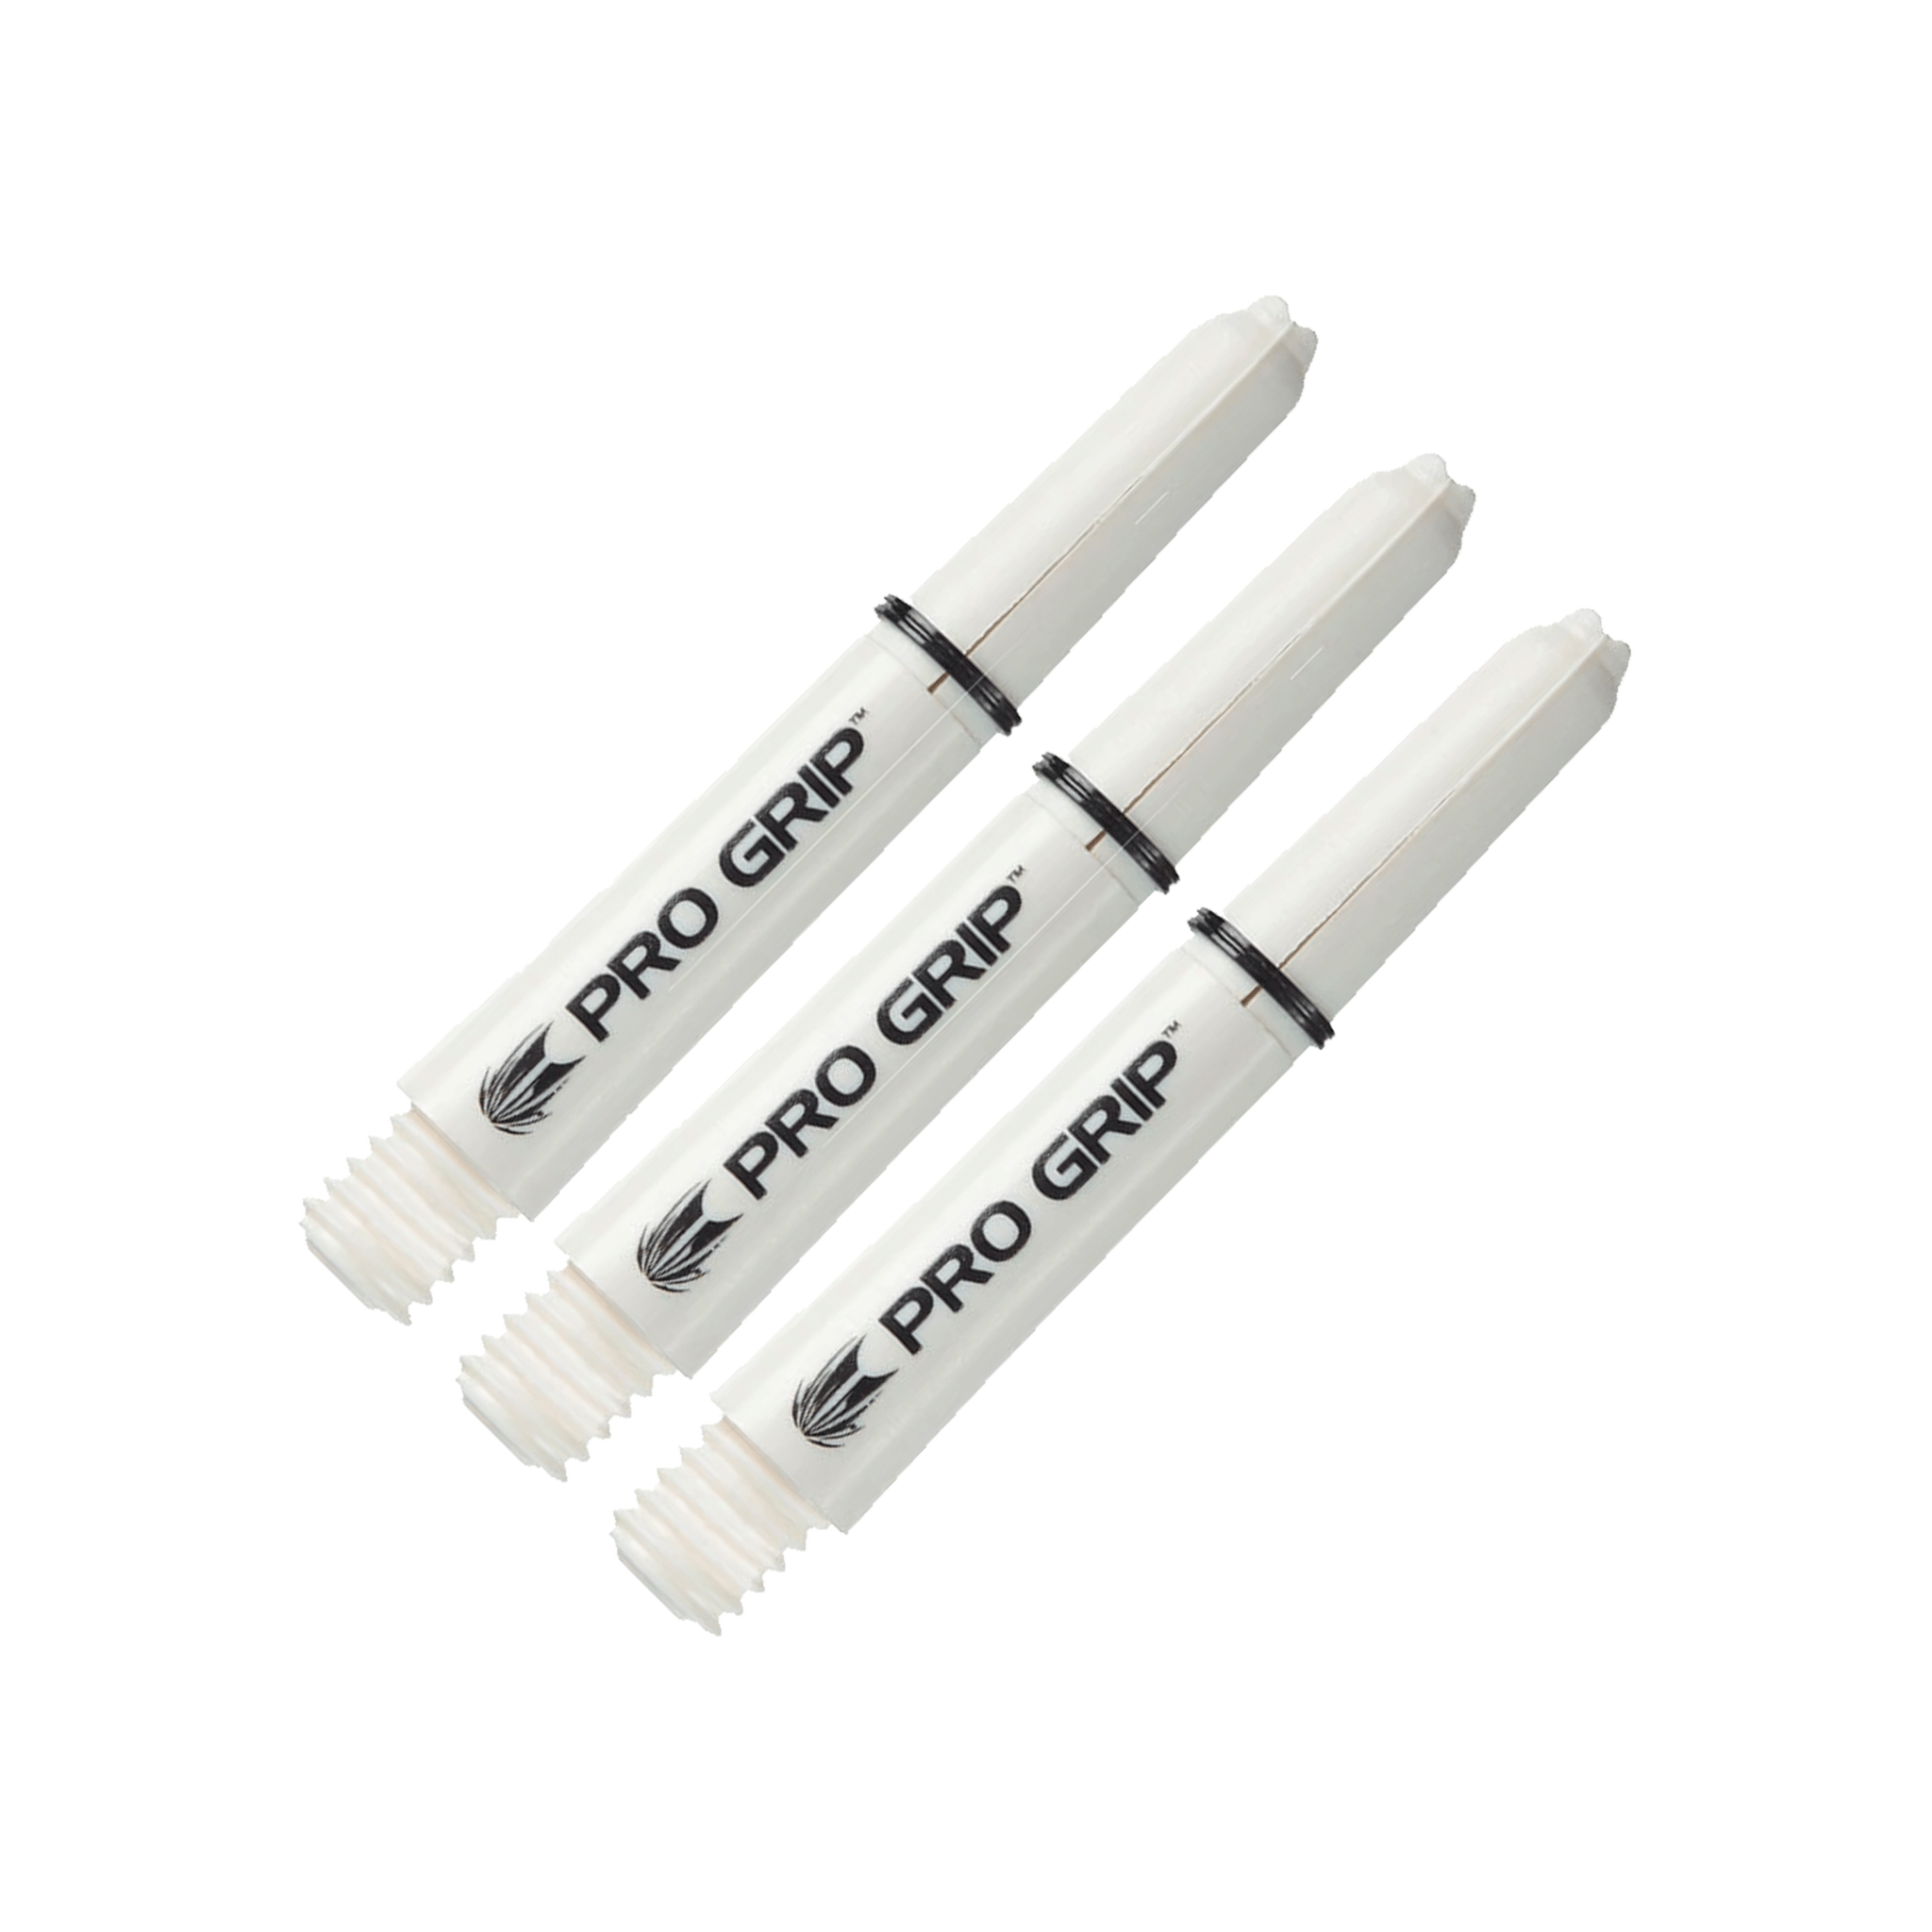 Target Pro Grip Multi Pack - Nylon Dart Shafts (3 Sets) White / Short (34mm) Shafts